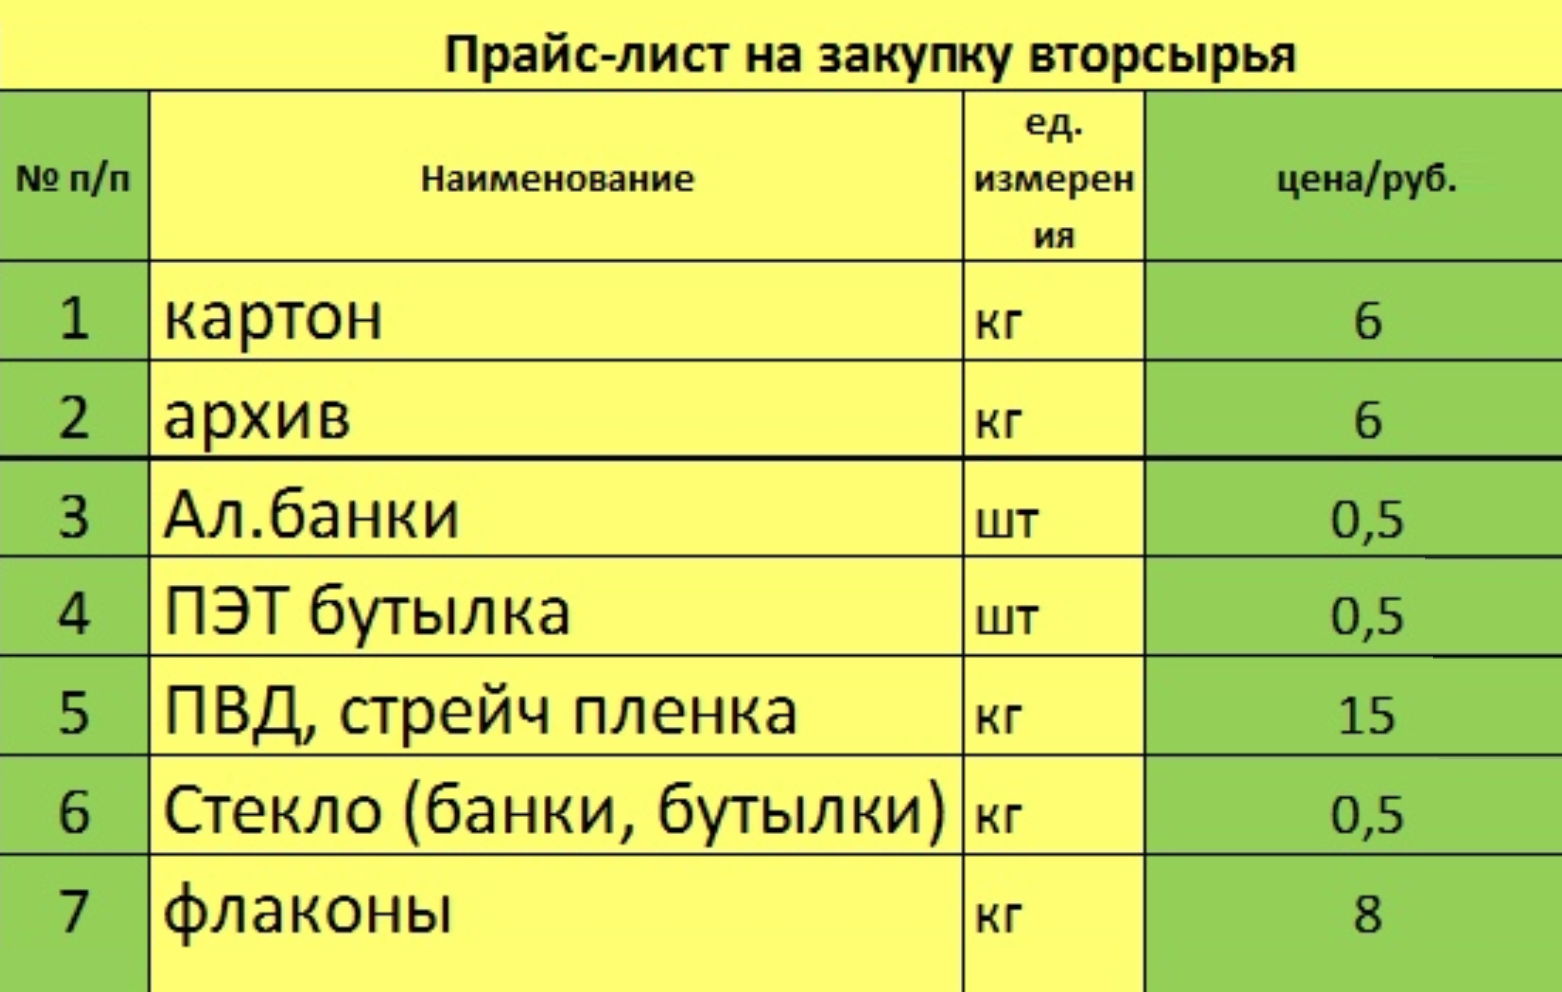 Цены на вторсырье в нижегородских «Экопунктах» на 2020 год